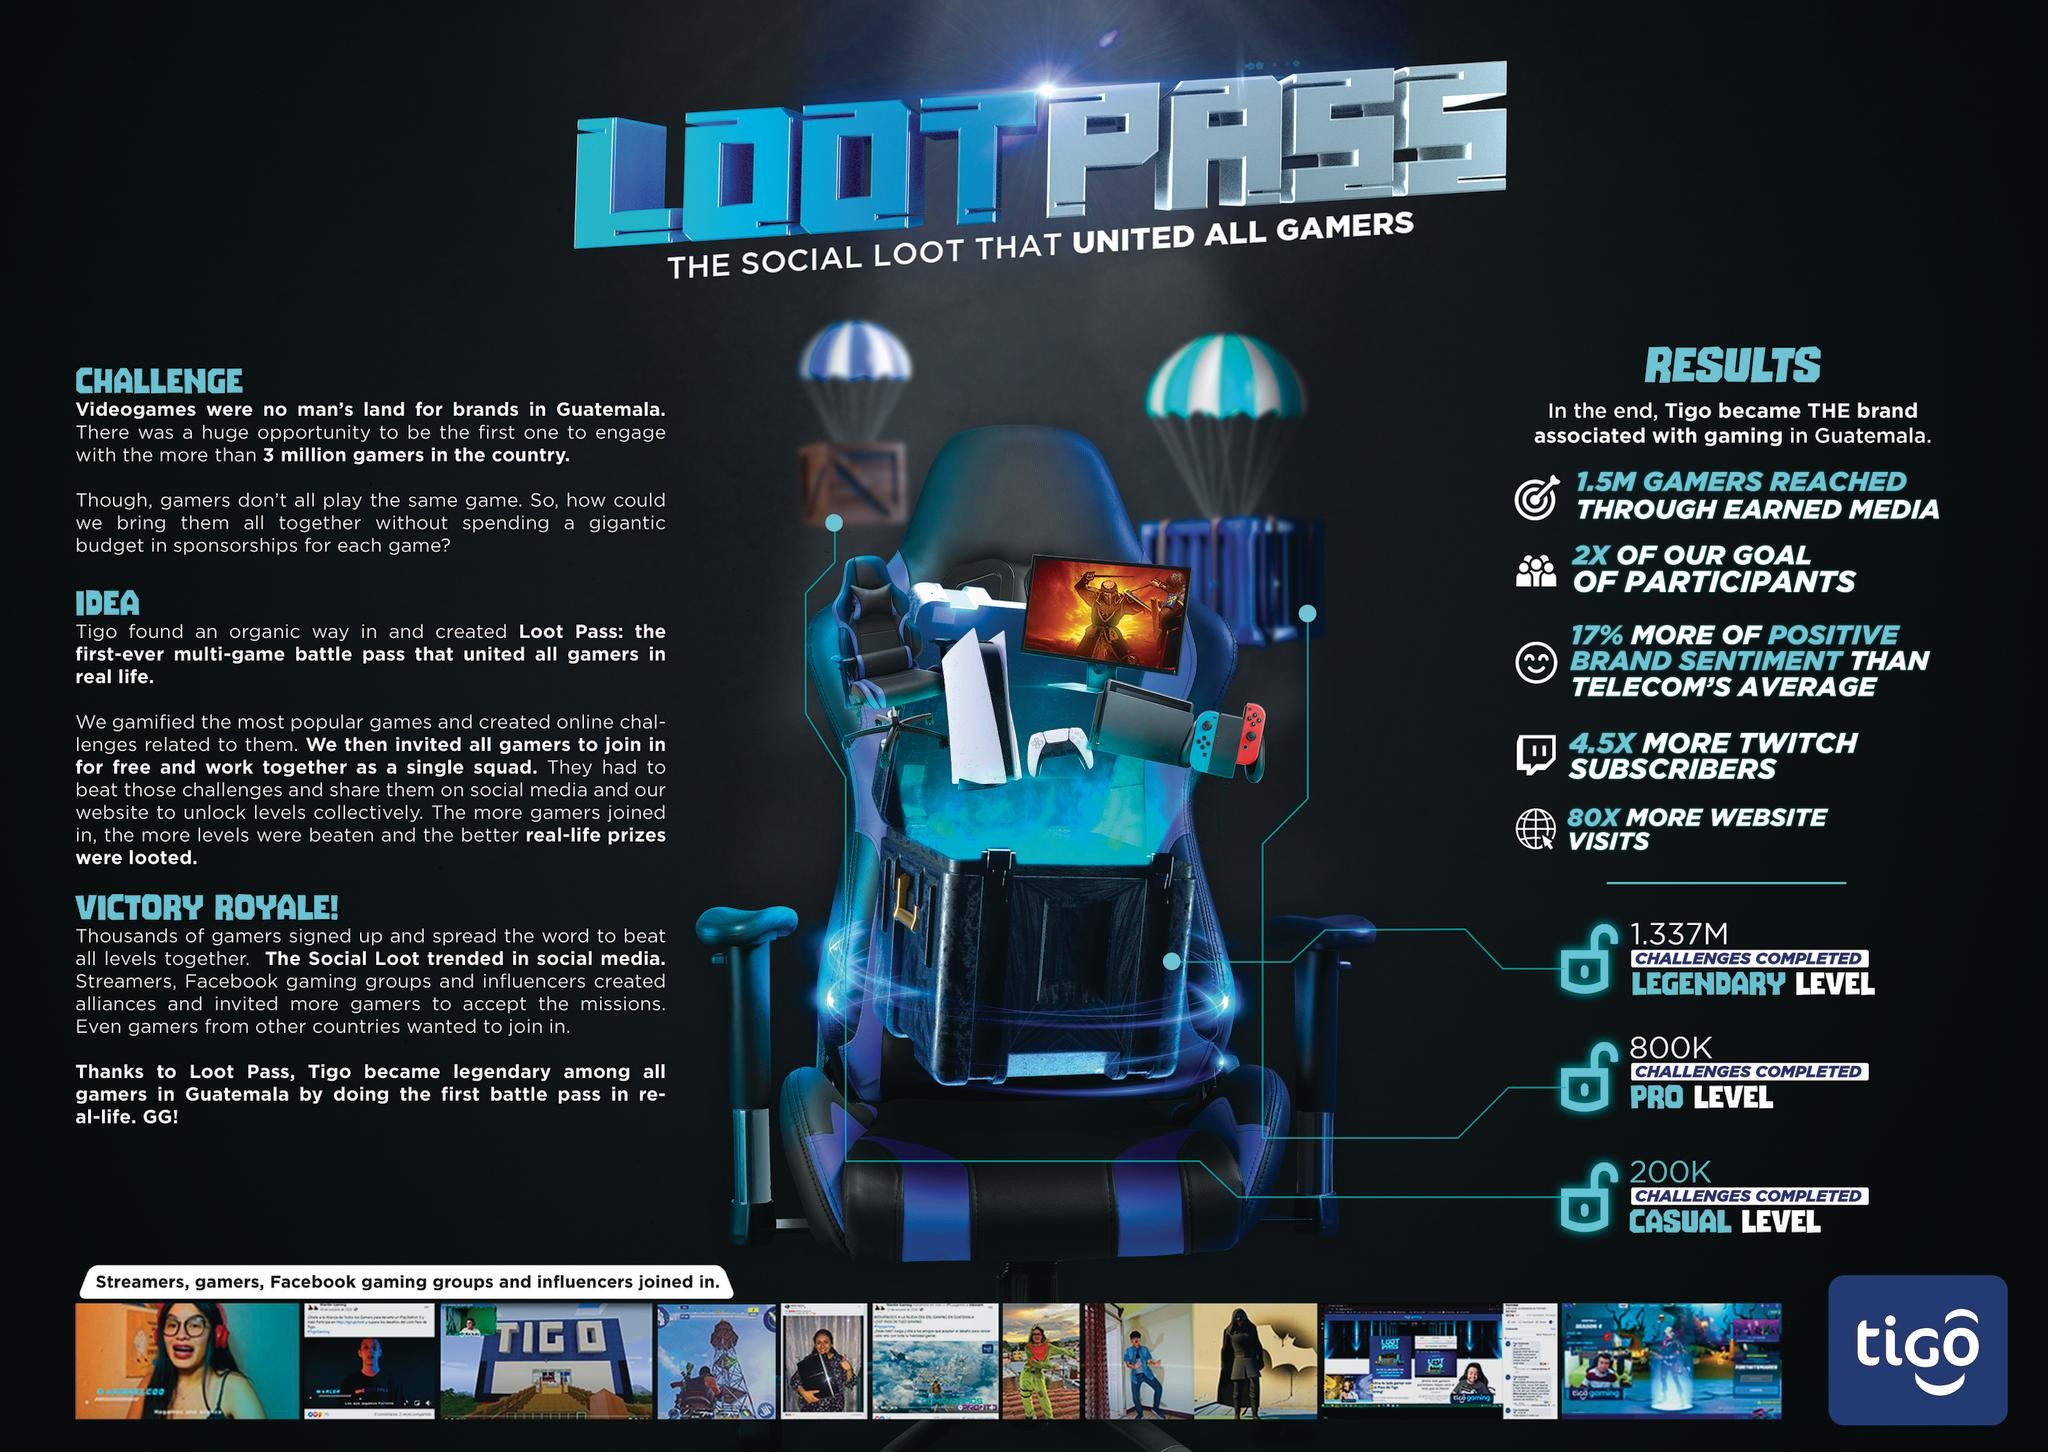 Loot Pass